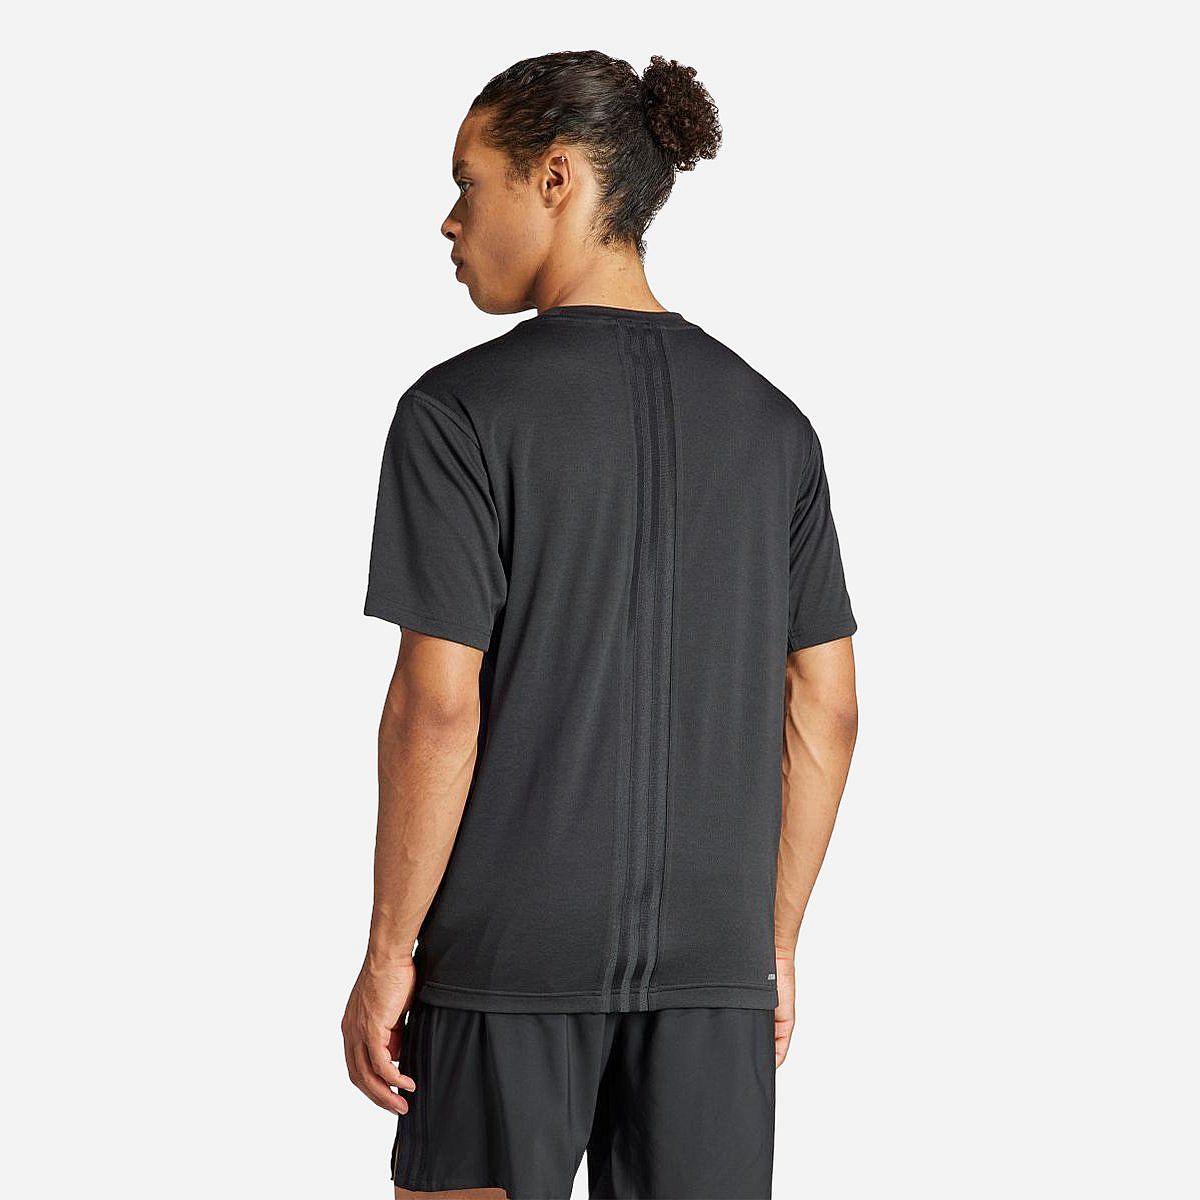 AN308741 HIIT Workout 3-Stripes T-shirt